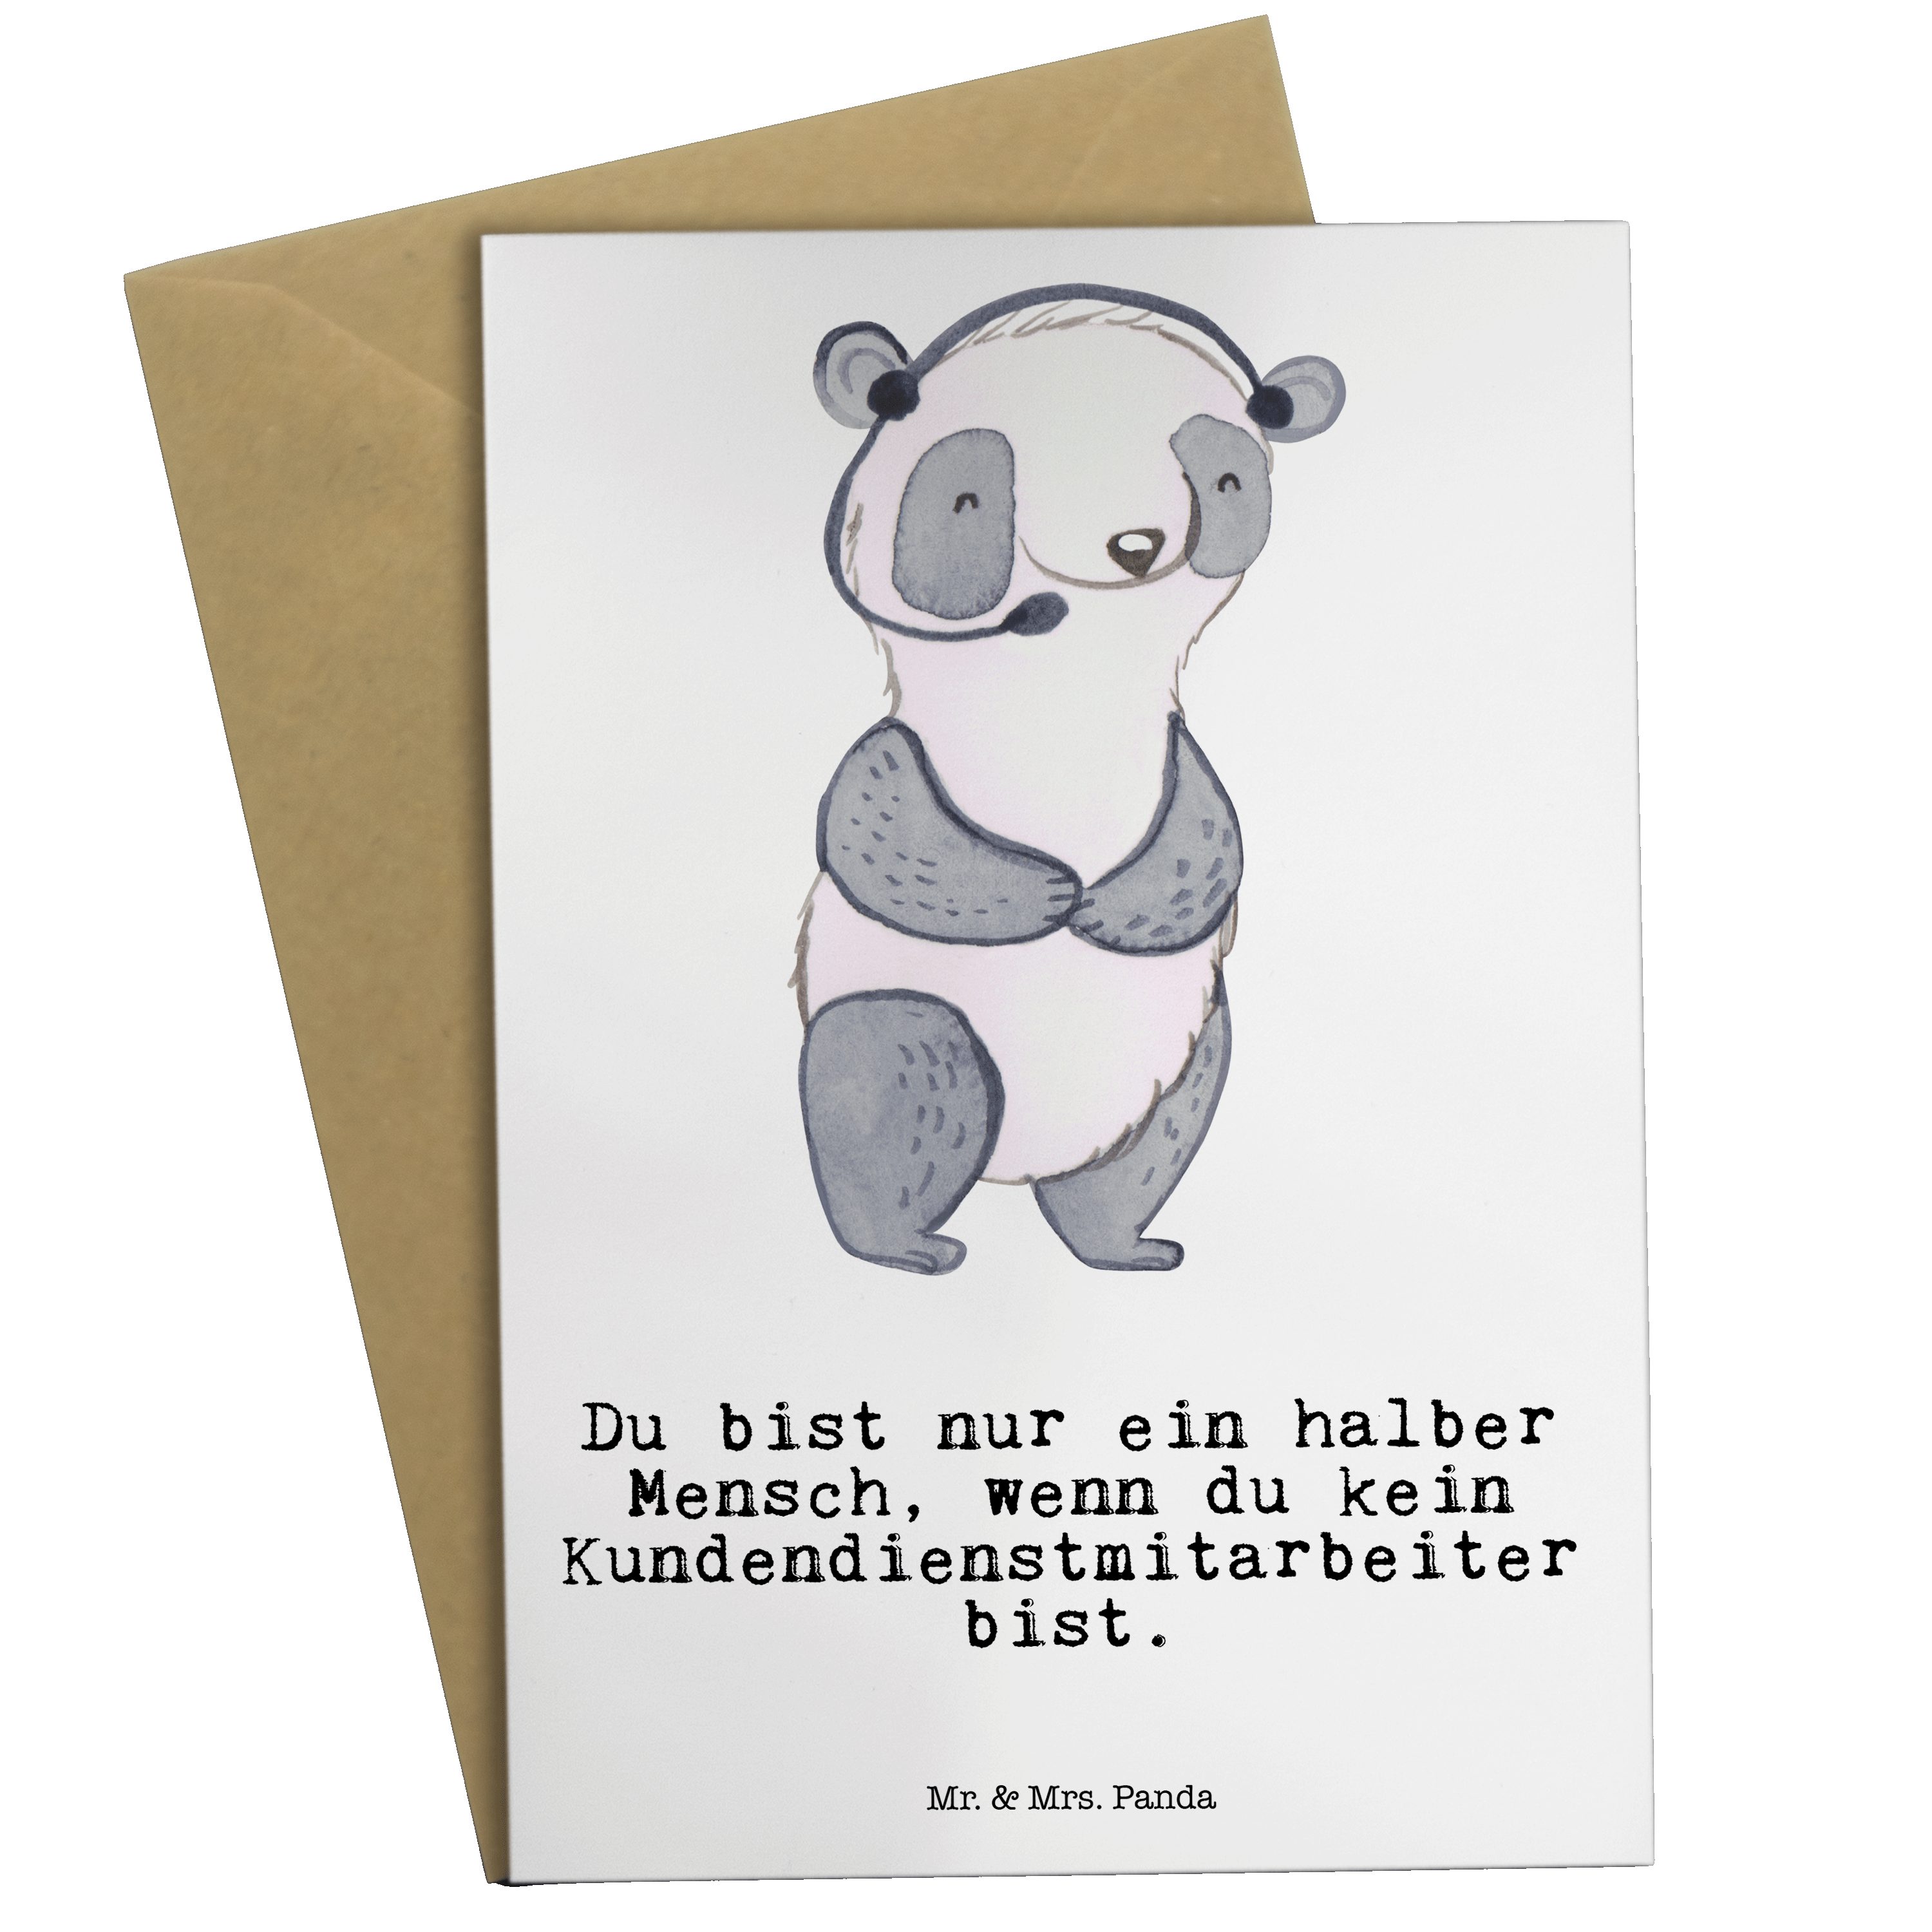 Mr. & Mrs. Panda Grußkarte Kundendienstmitarbeiter mit Herz - Weiß - Geschenk, Danke, Hochzeitsk